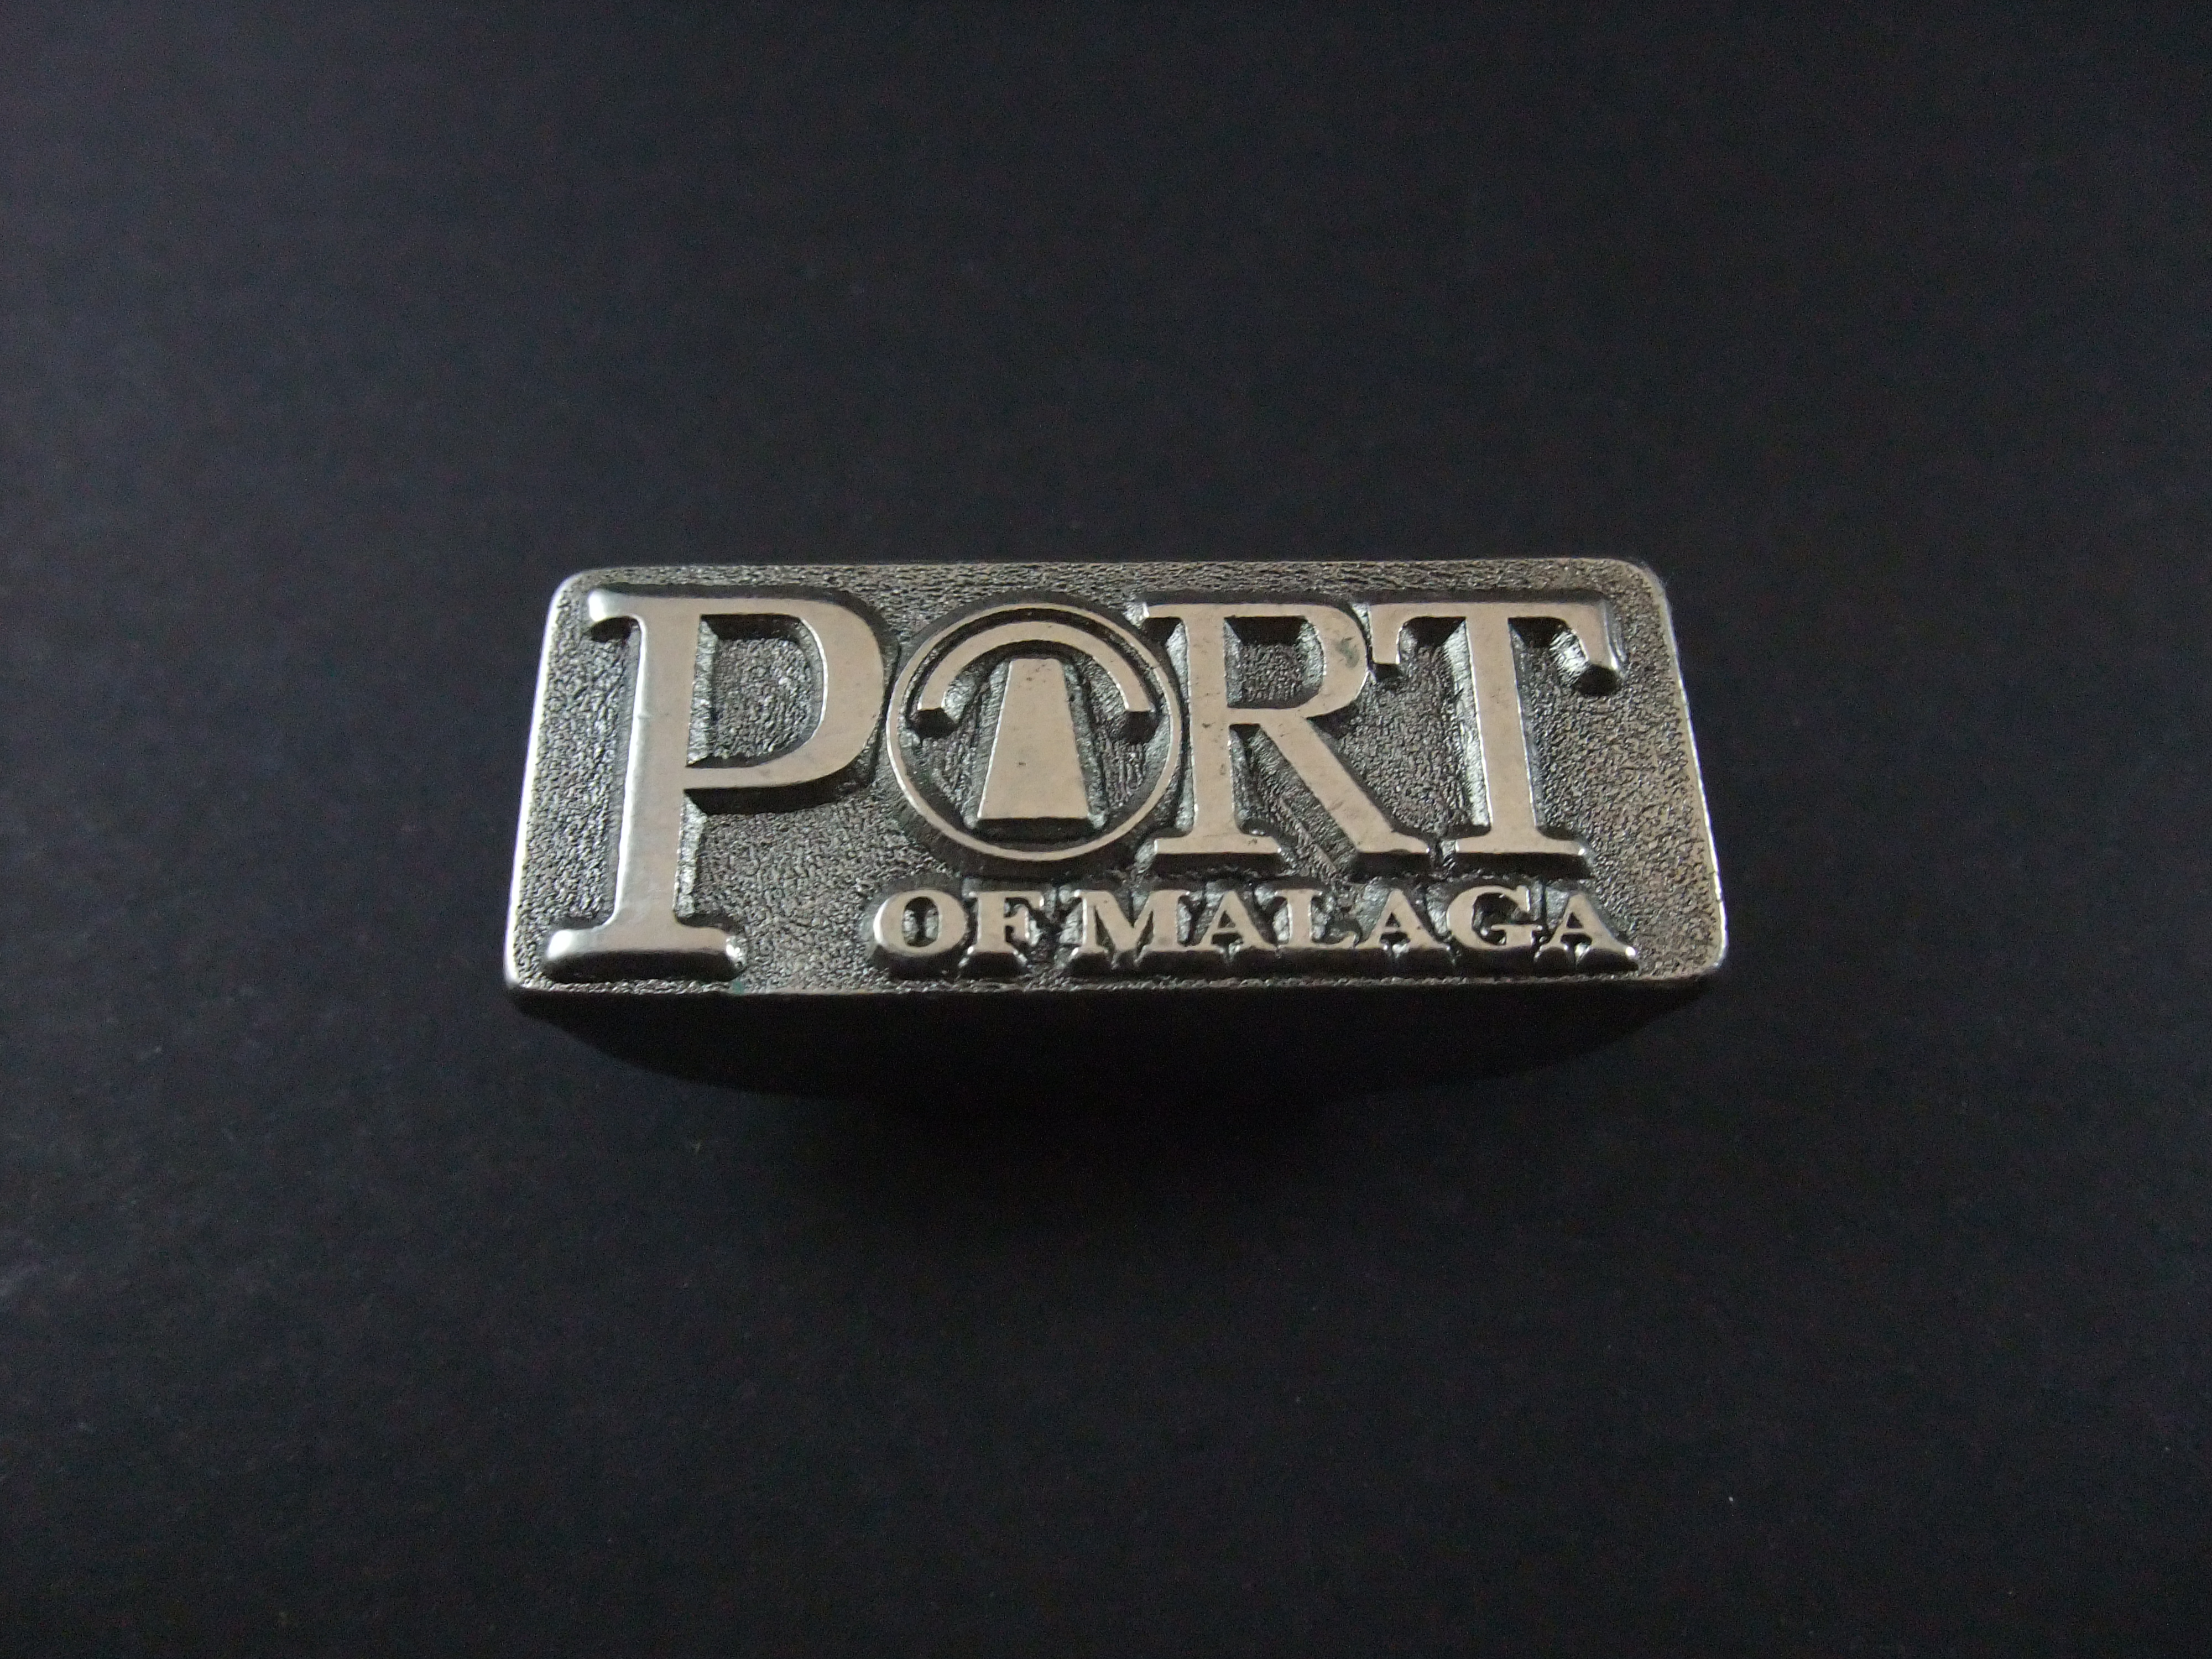 Port of Malaga ( logo van de havenautoriteit) clip